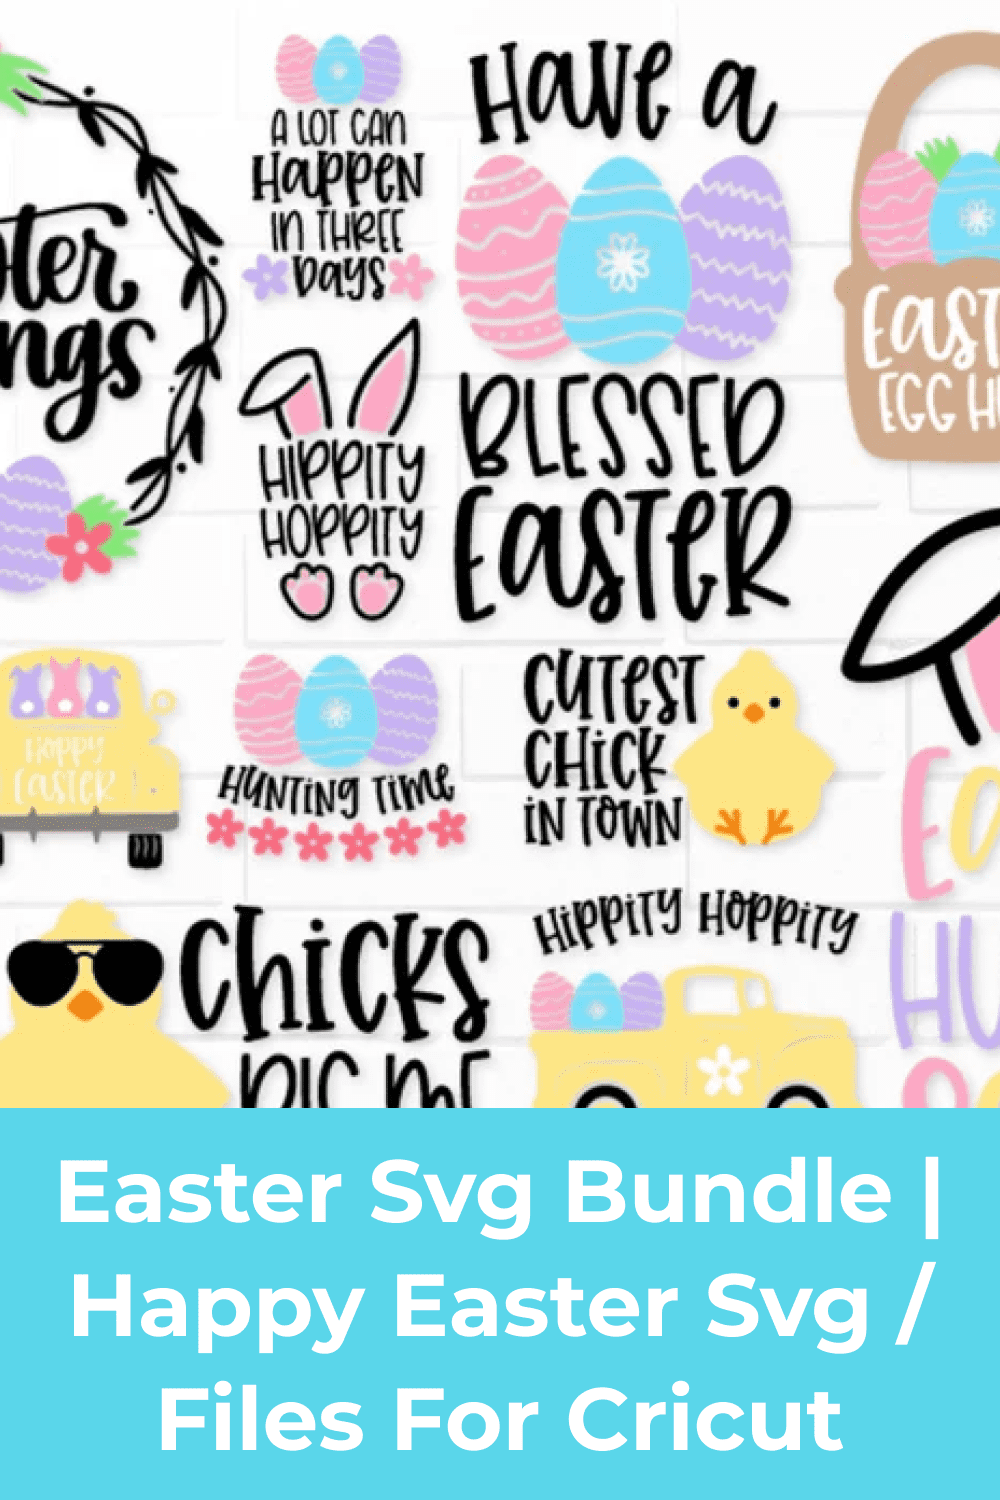 Easter Svg Bundle | Happy Easter Svg | Files for Cricut.